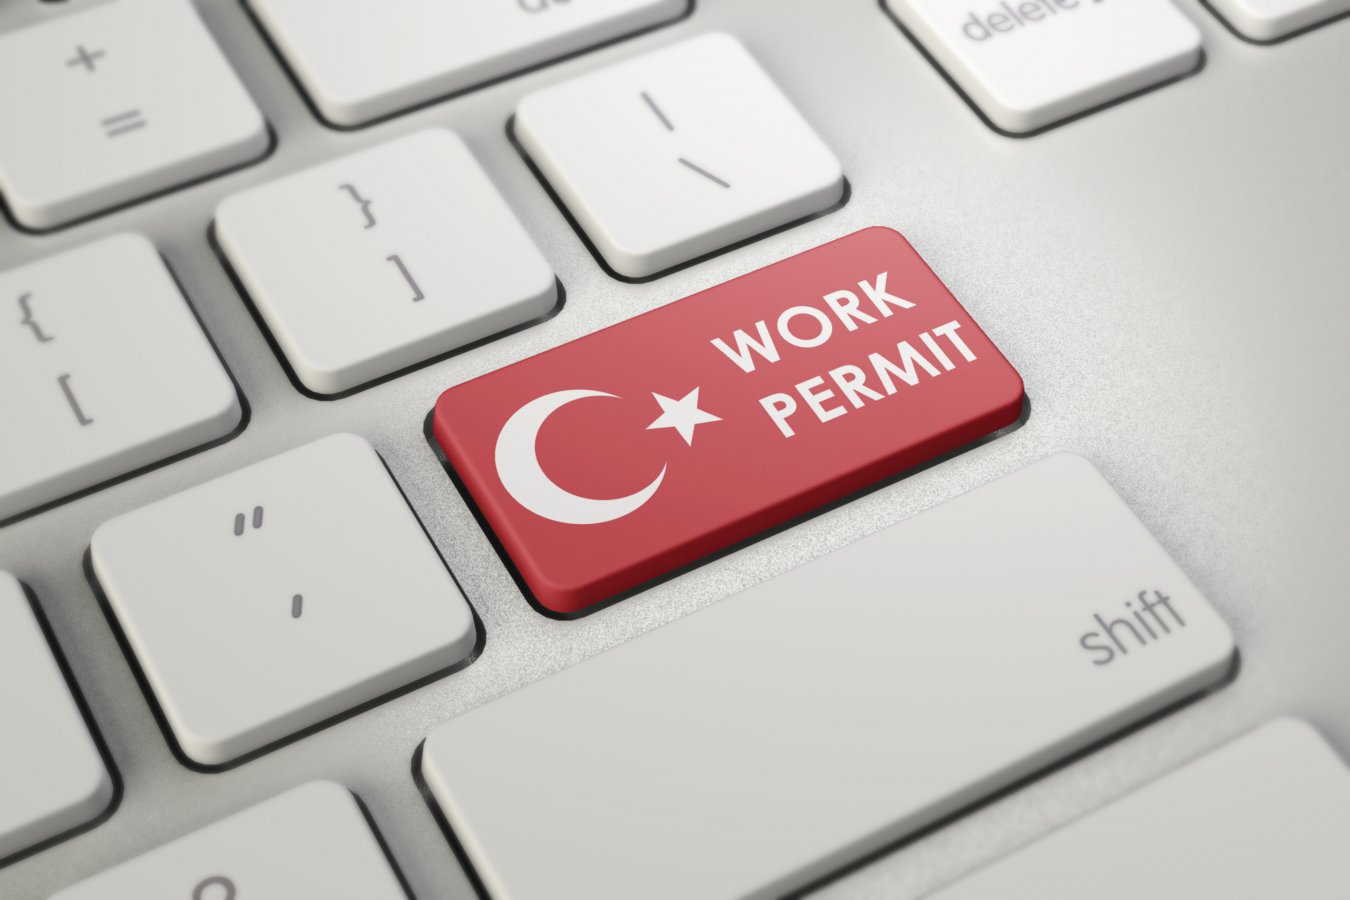 Obtaining Work Permit